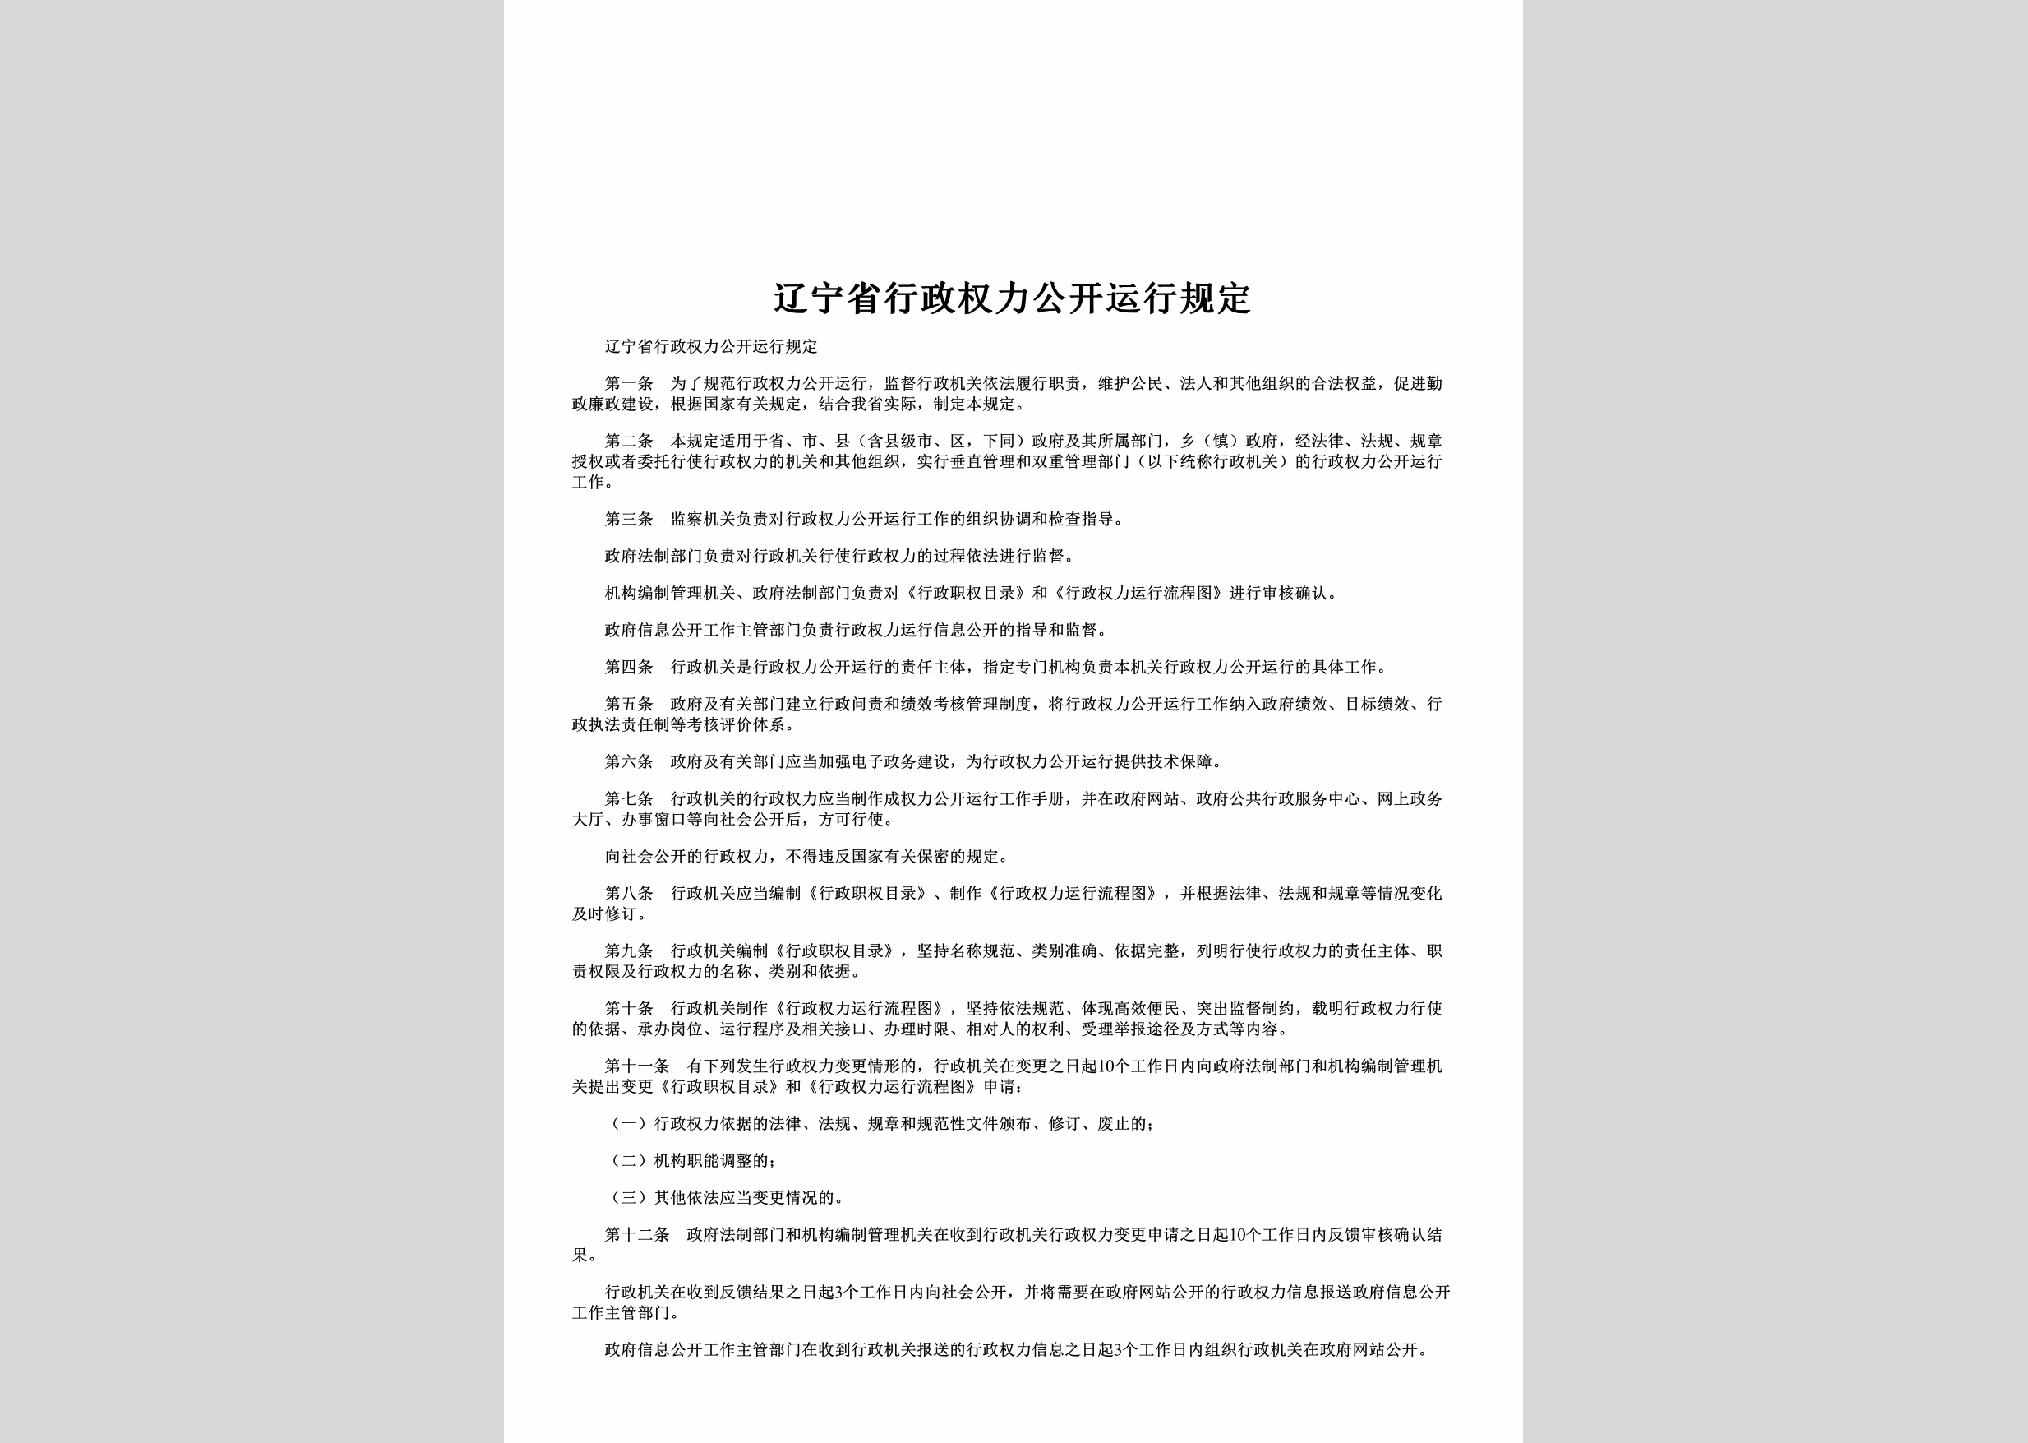 LN-XZQLYXGD-2012：辽宁省行政权力公开运行规定